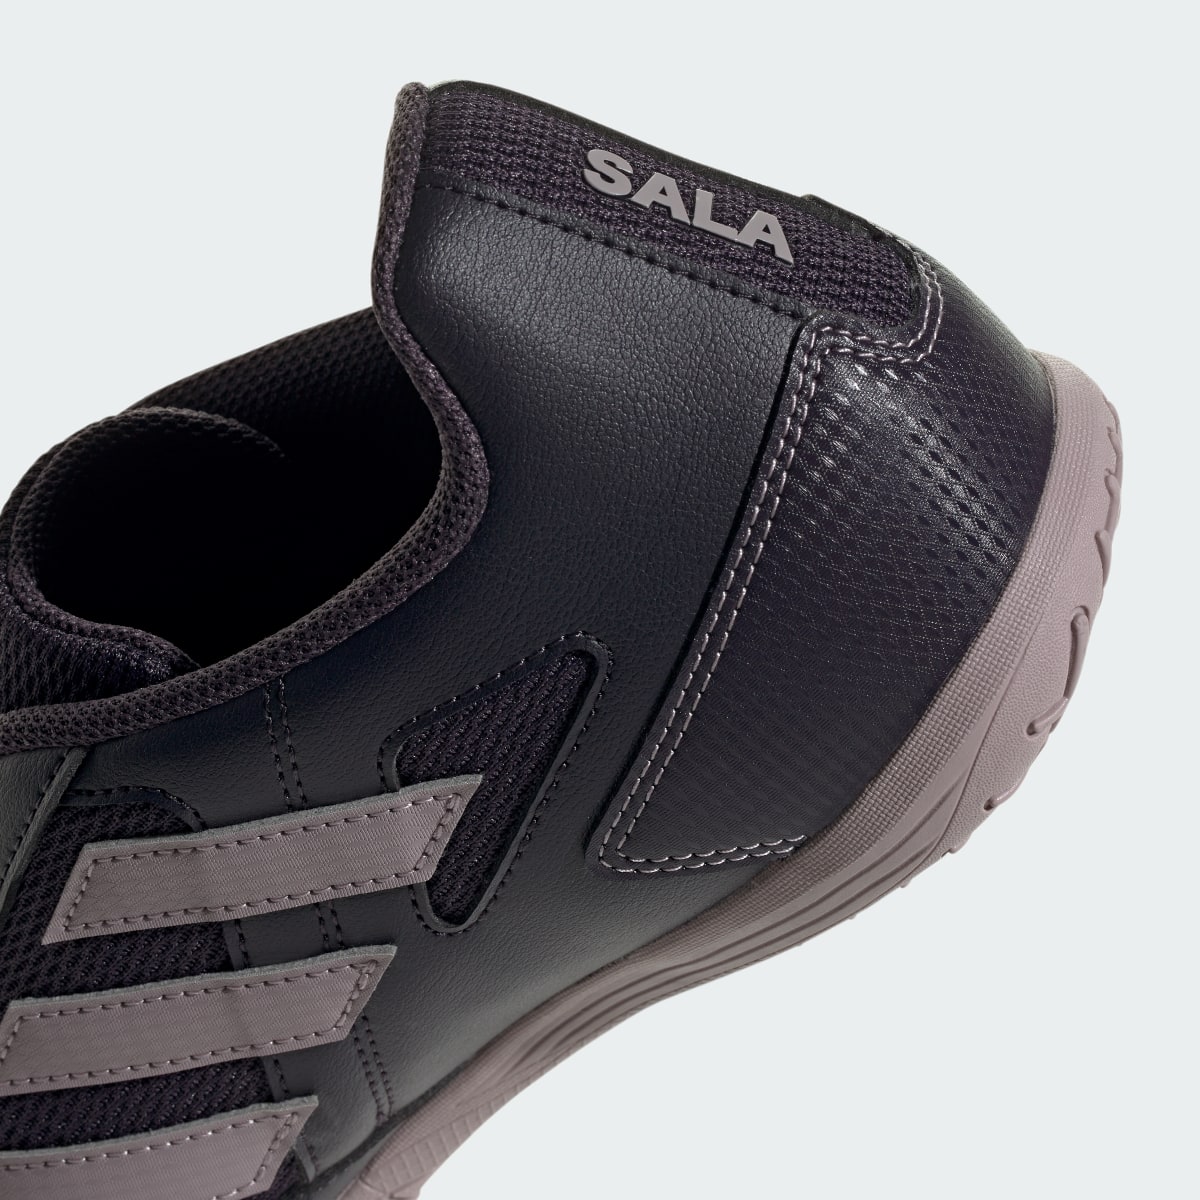 Adidas Super Sala II Indoor Boots. 10